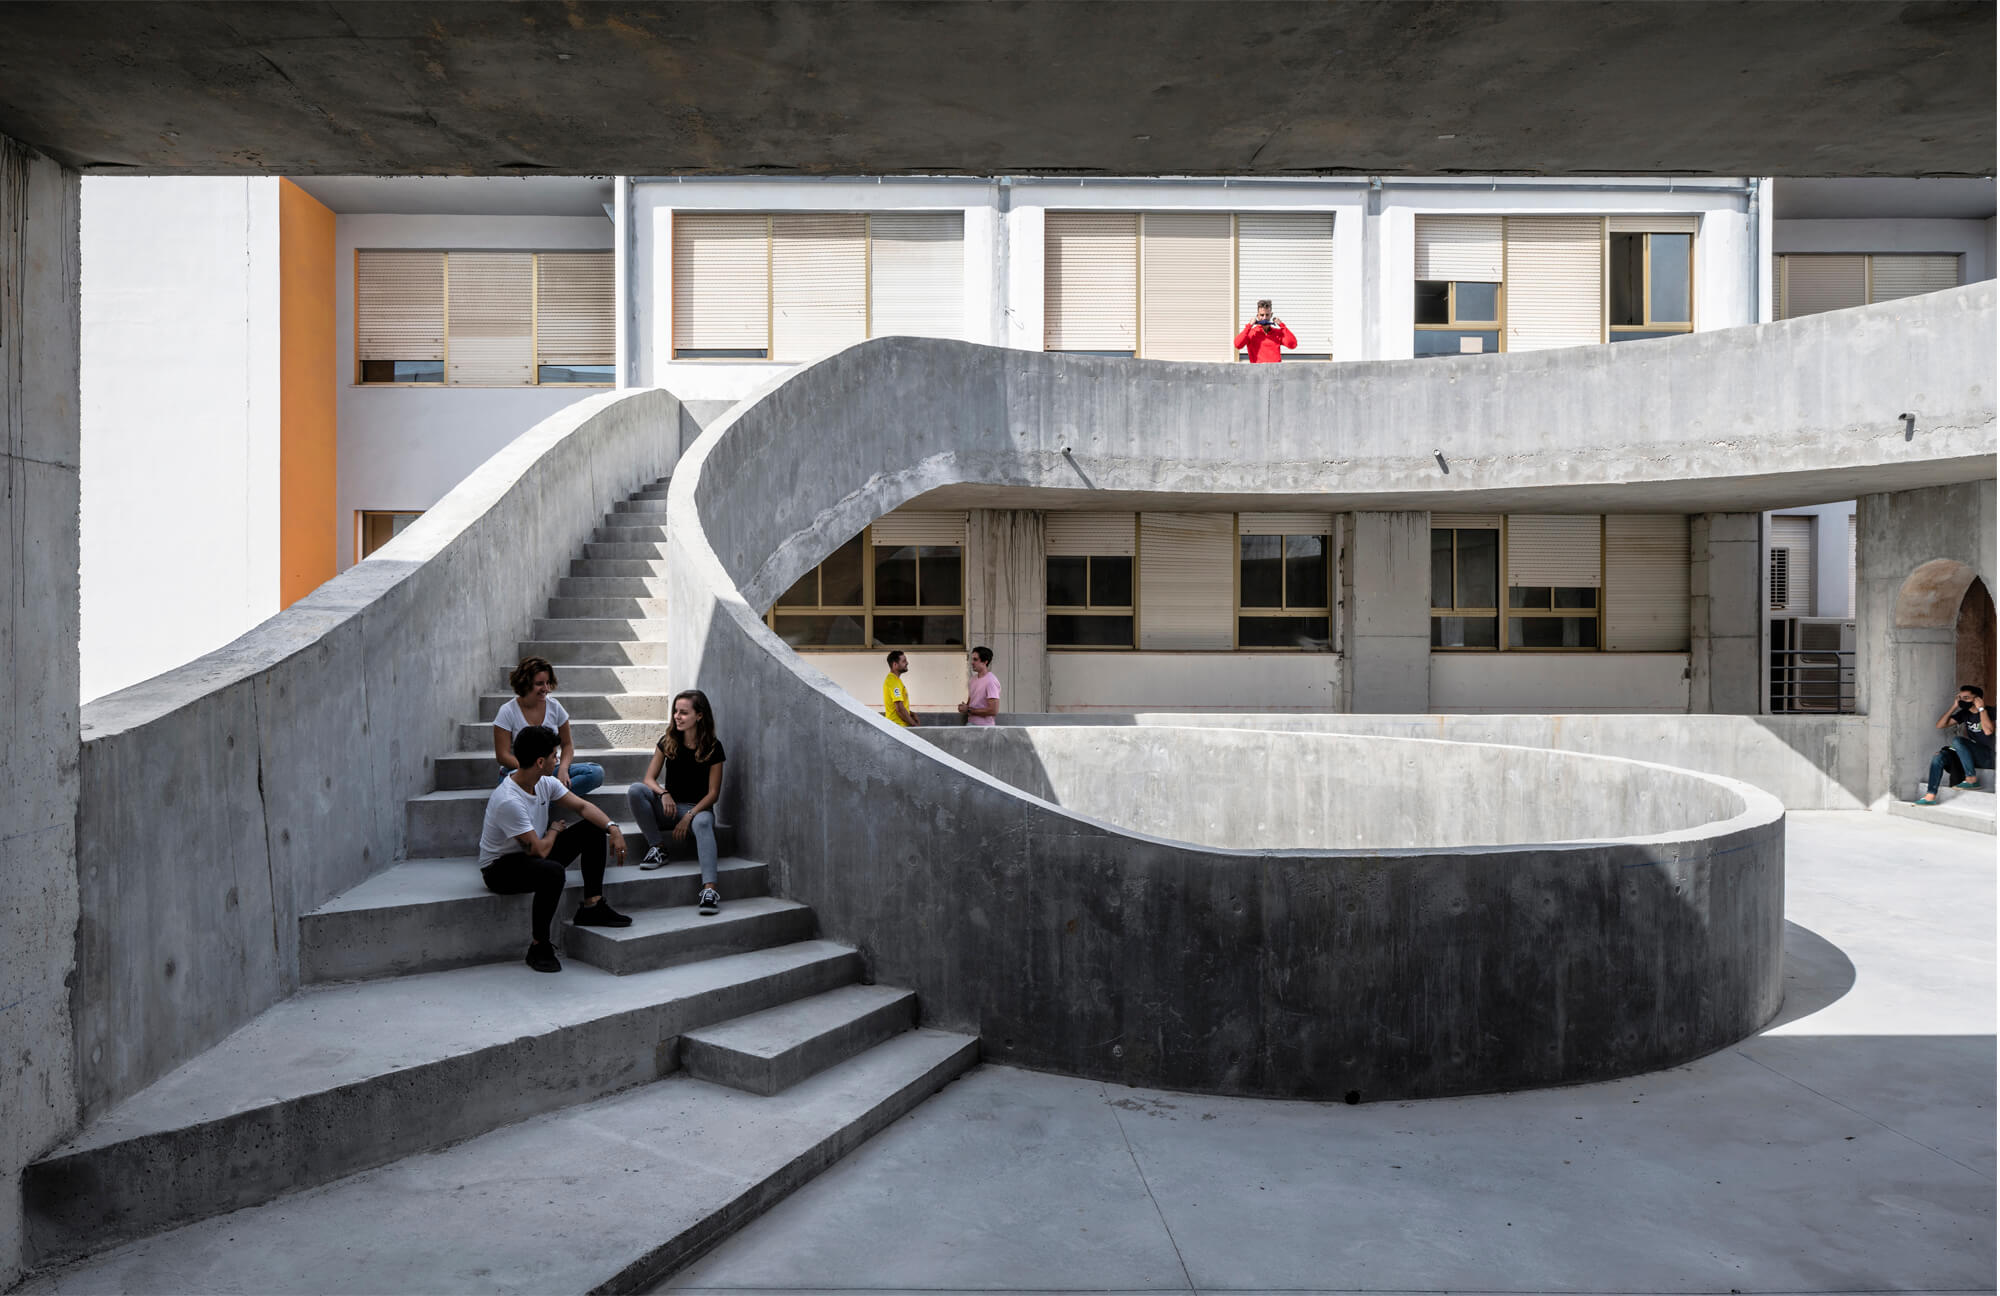 Treppenaufgang im Hof, Fakultät für bildende Künste der Universität Malaga, DJarquitectura, Foto: Jesus Granada